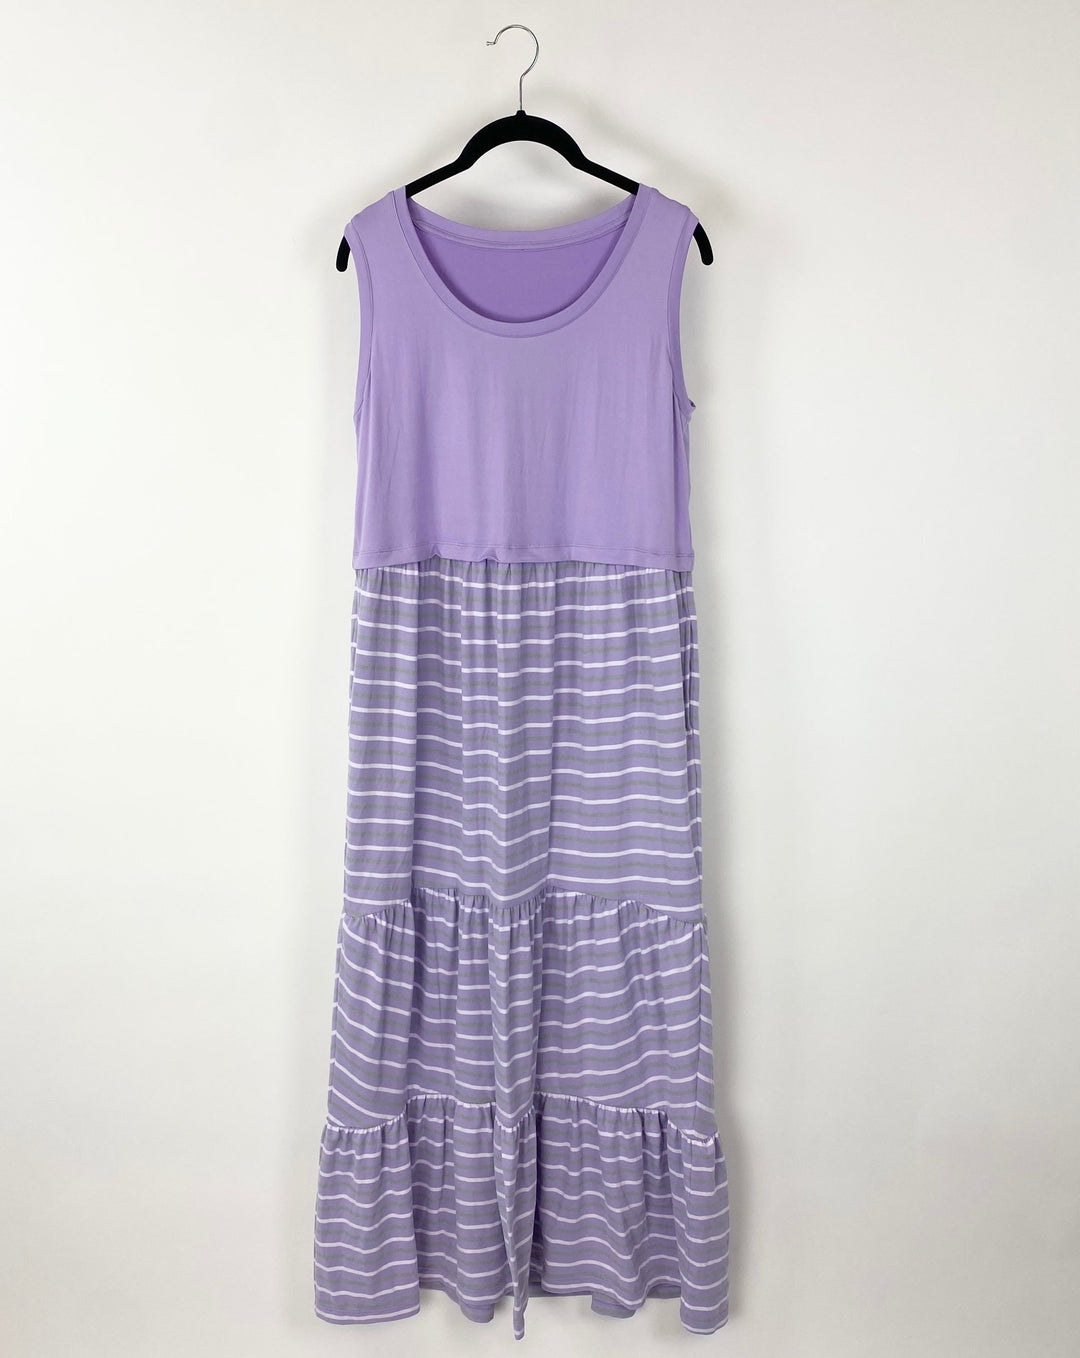 Purple Sleeveless Maxi Dress - Size 6/8